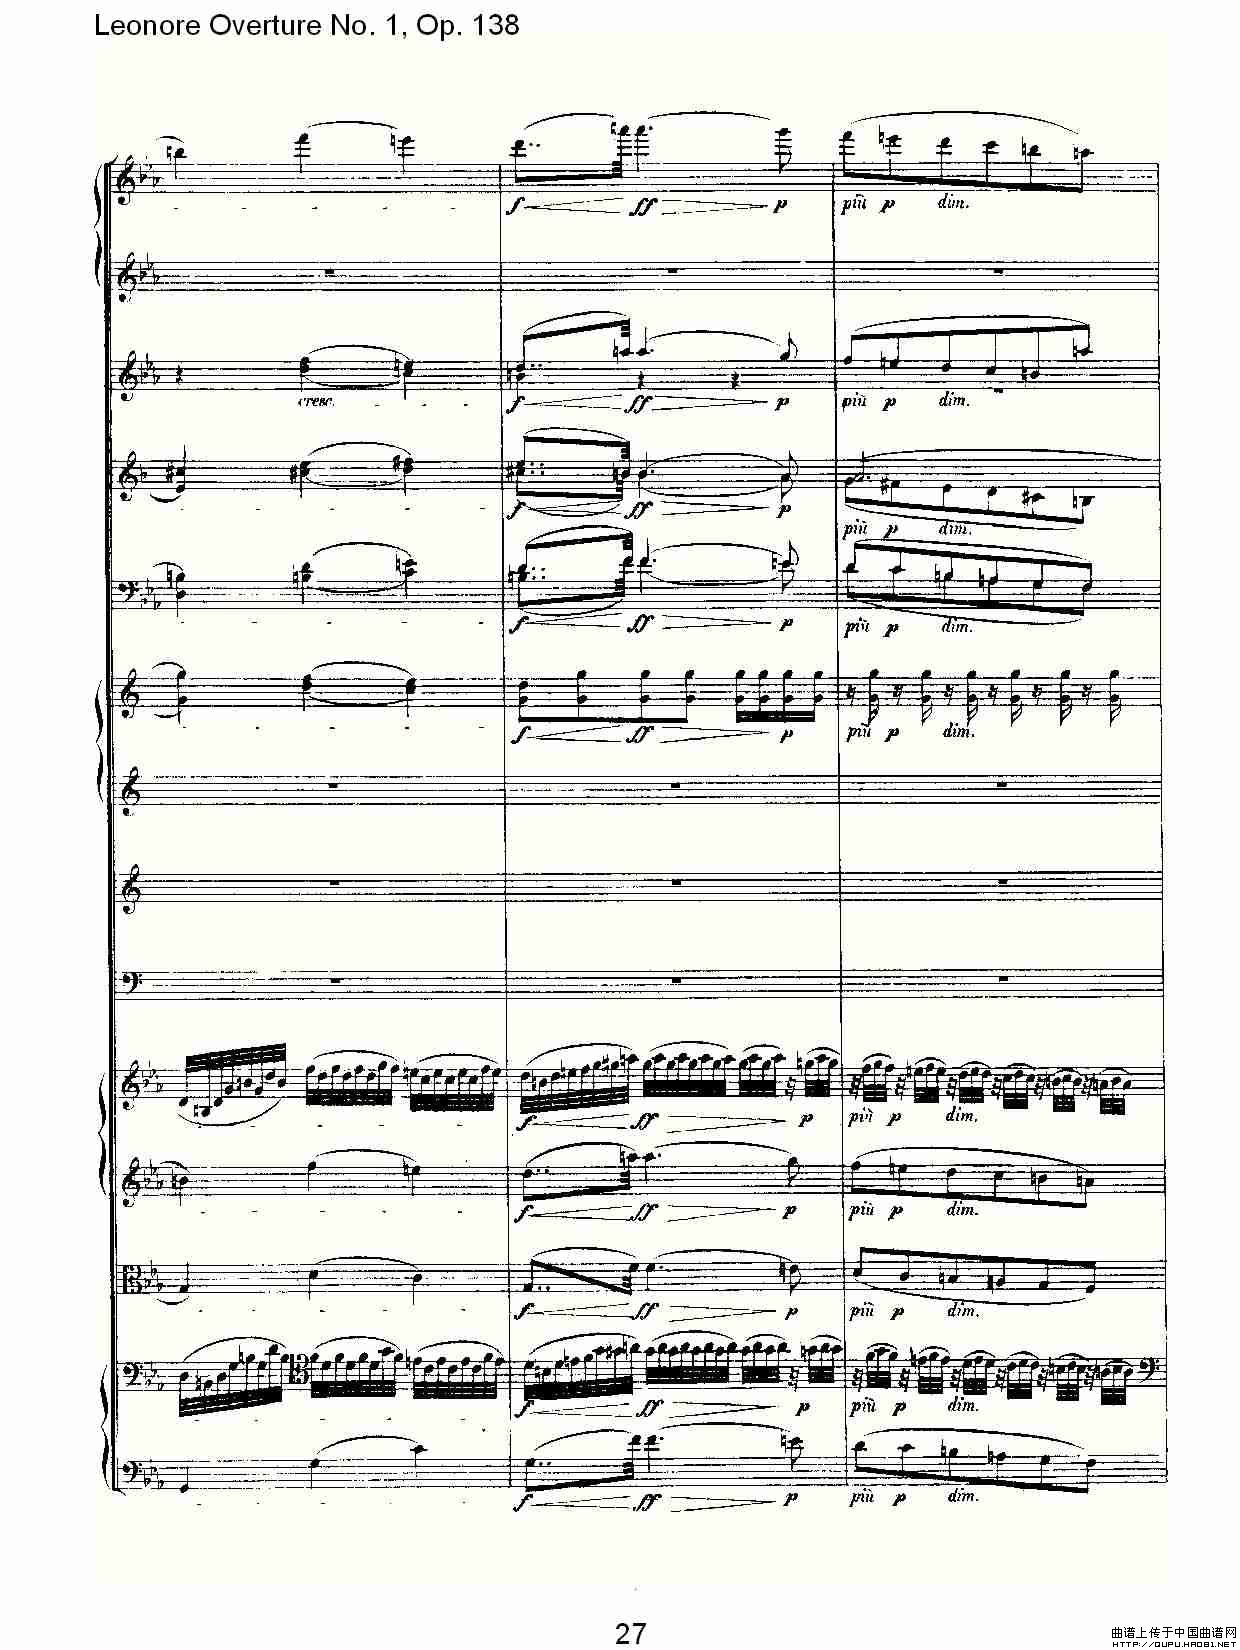 Leonore Overture No. 1, Op. 138